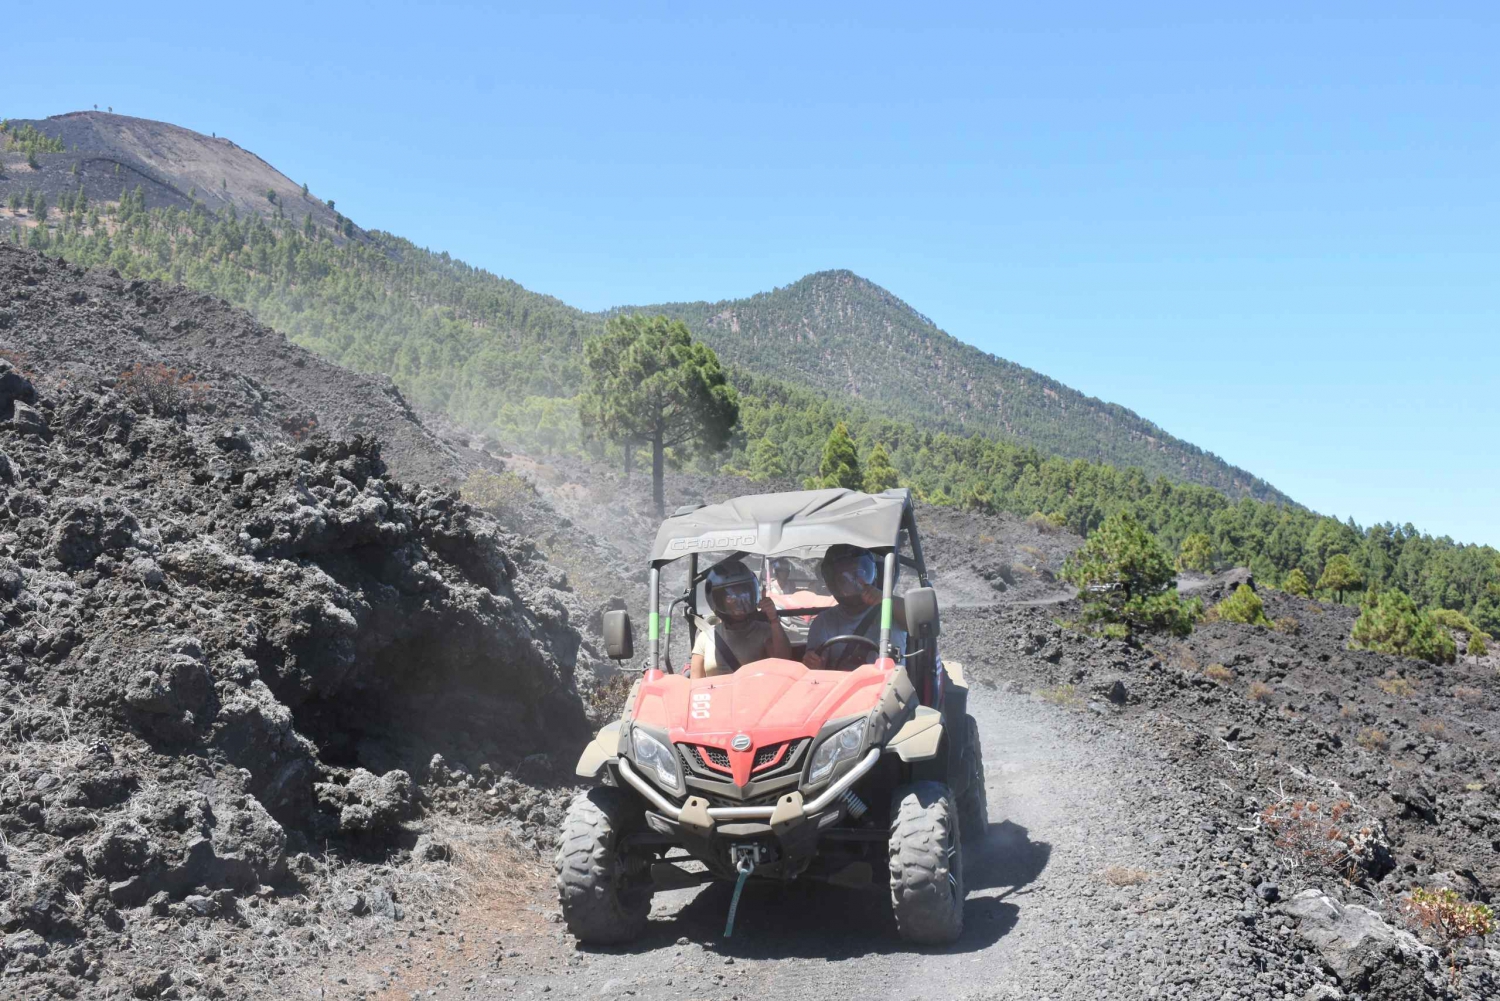 La Palma: Volcano Route Buggy Tour